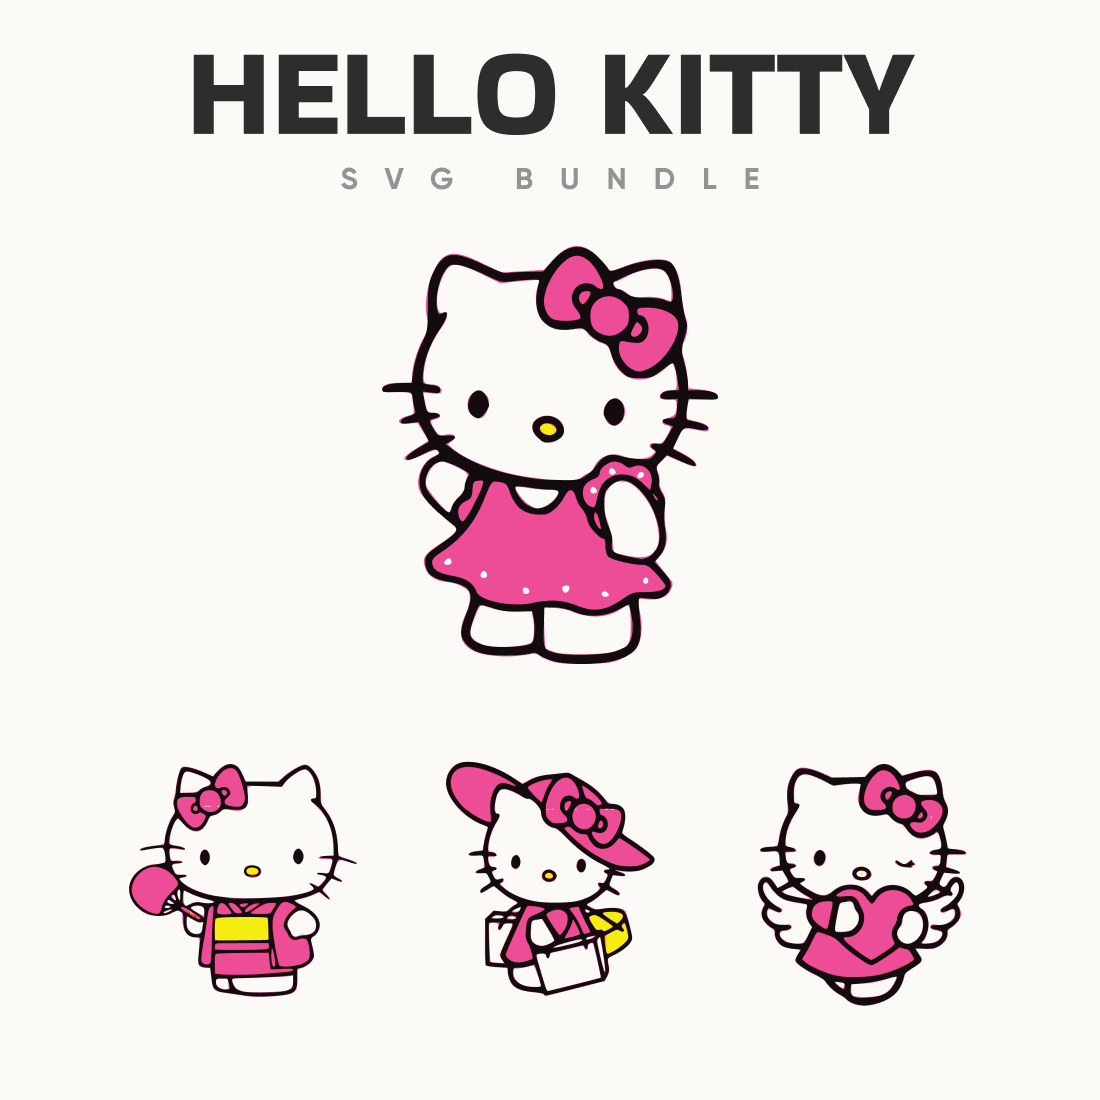 8 Hello Kitty SVG Designs | Master Bundles